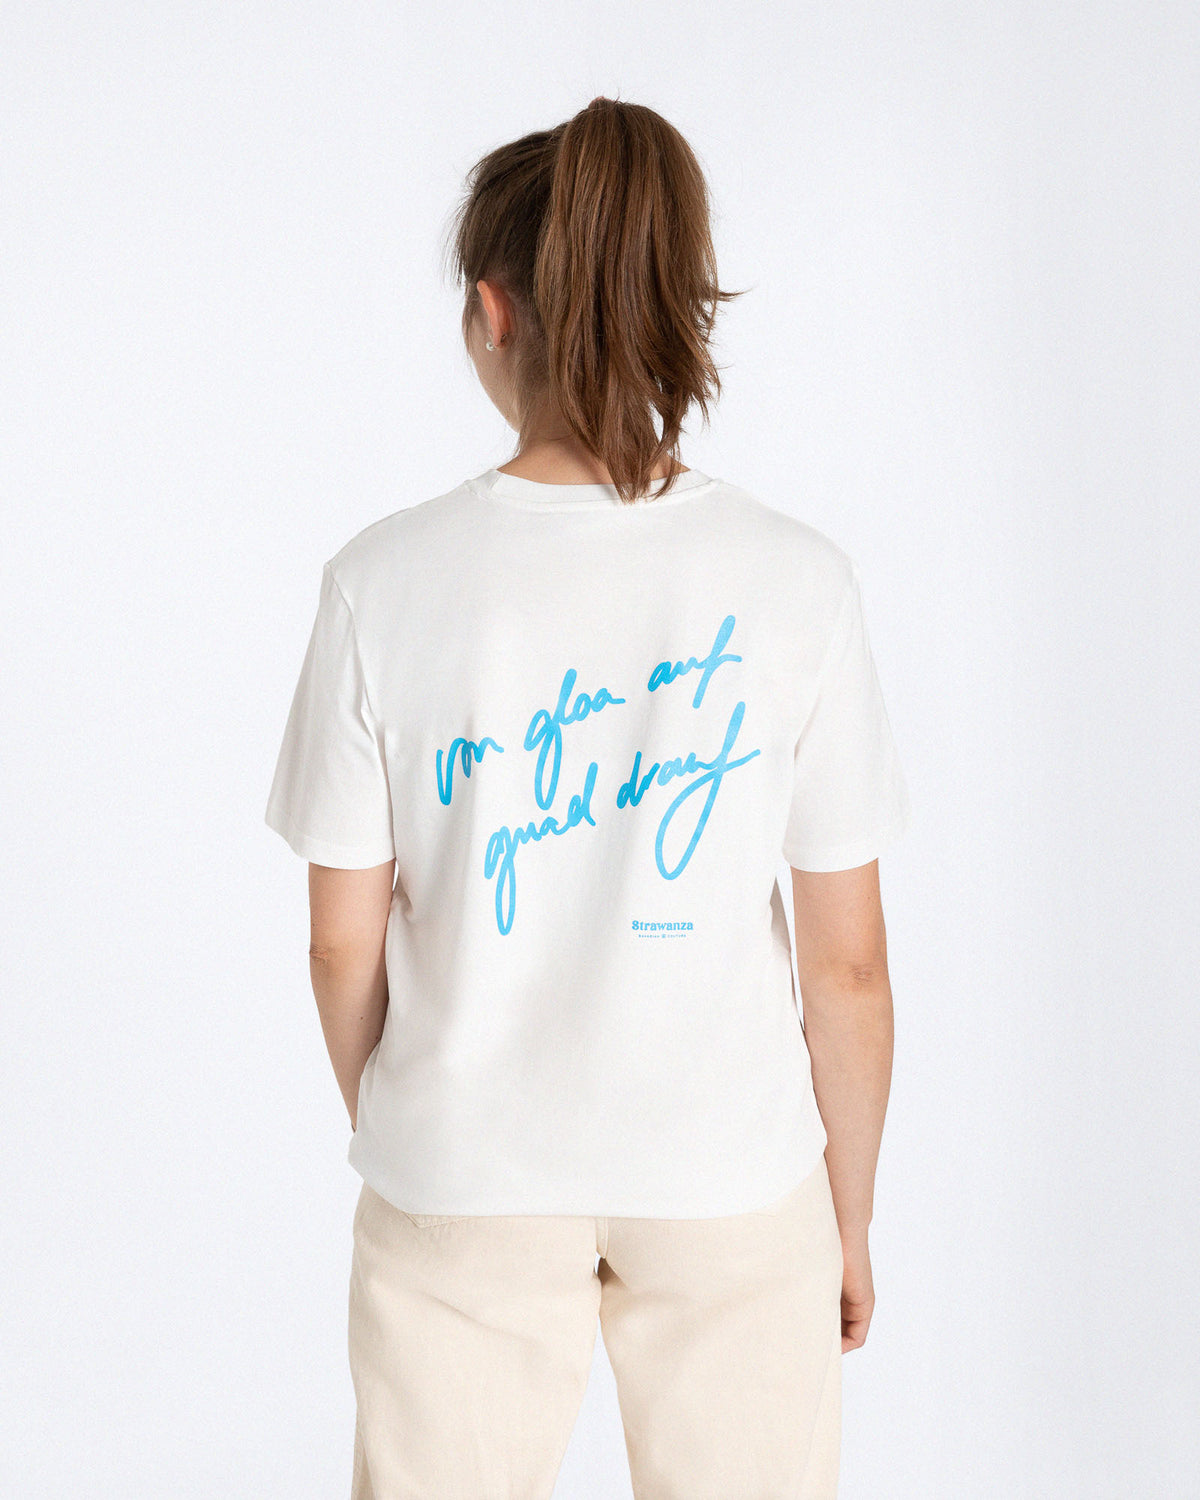 Ein weibliches Model trägt ein weißes T-Shirt mit einem blauen "von gloa auf guad drauf" Schriftzug als Backprint.